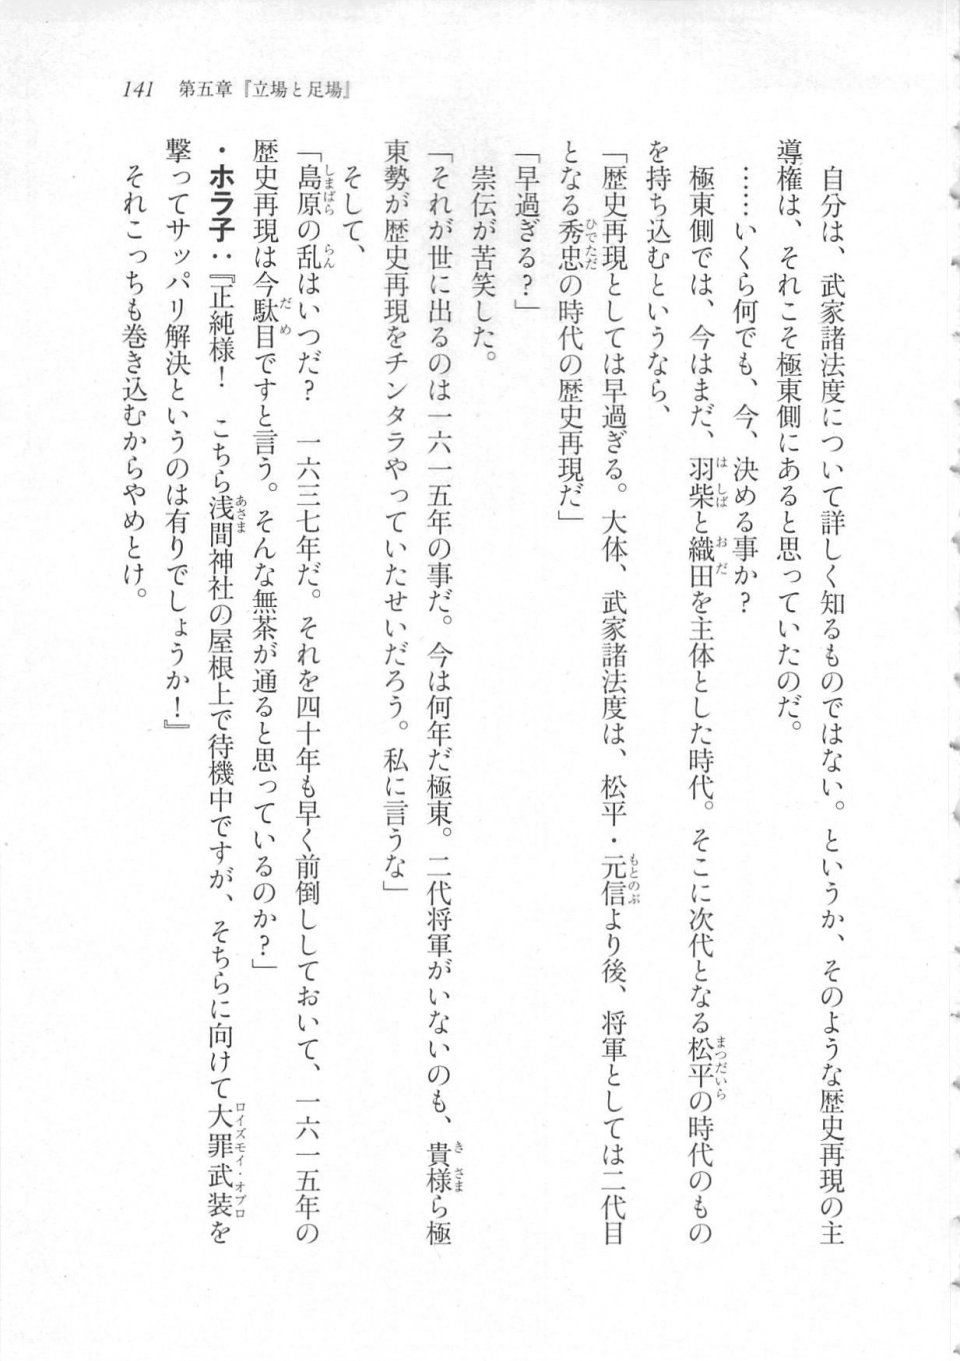 Kyoukai Senjou no Horizon LN Sidestory Vol 3 - Photo #145